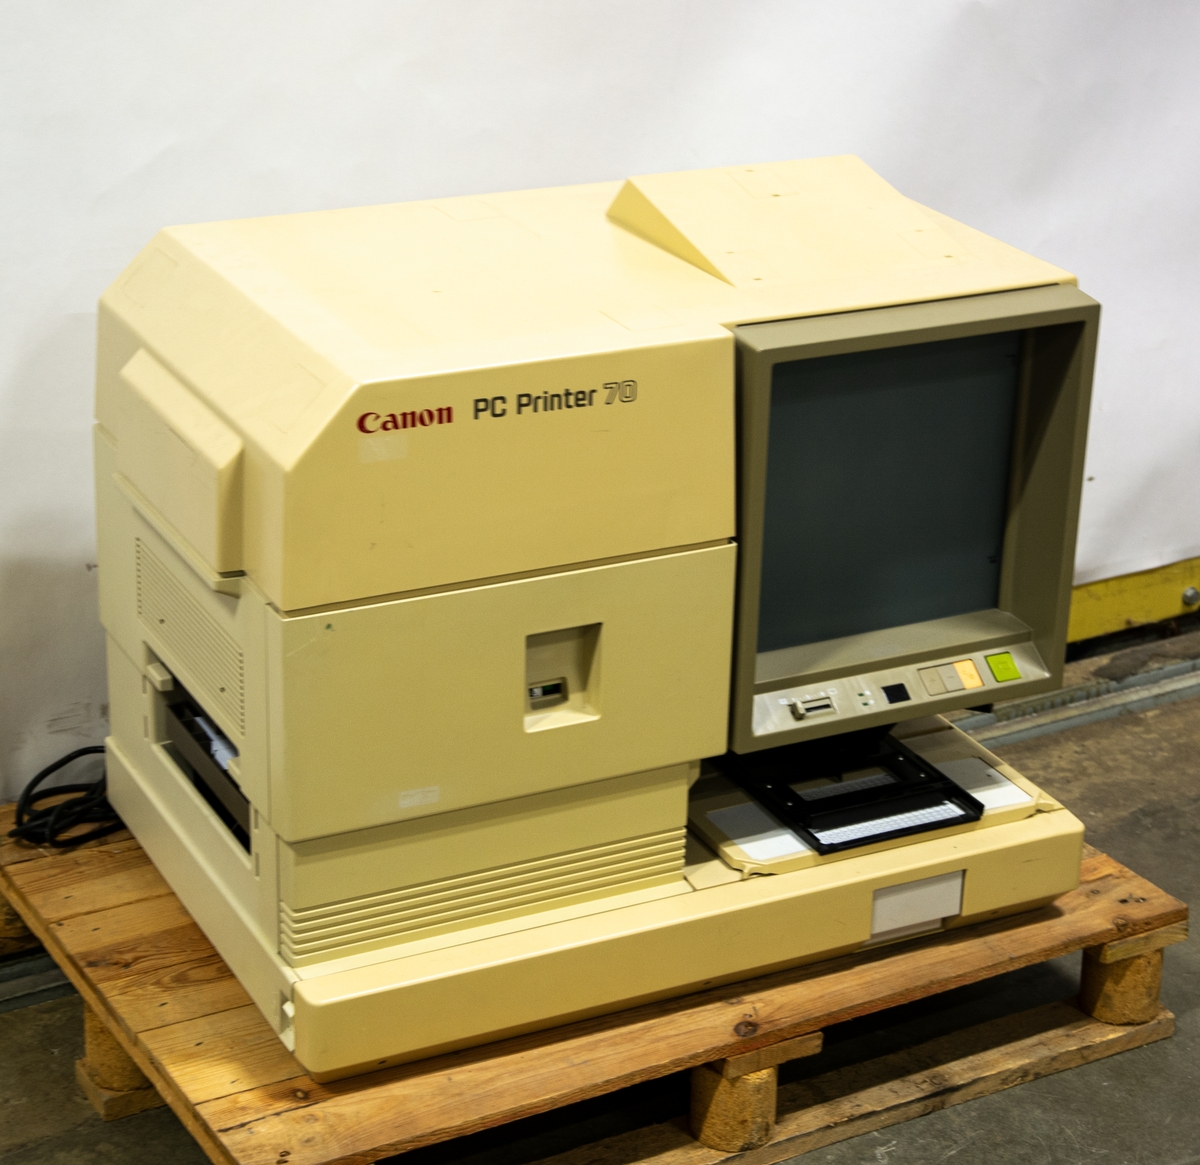 Canon PC Printer 70. Digital mikrofilms scanner/läsare och skrivare. Beigefärgad. Medföljer tillbehör.